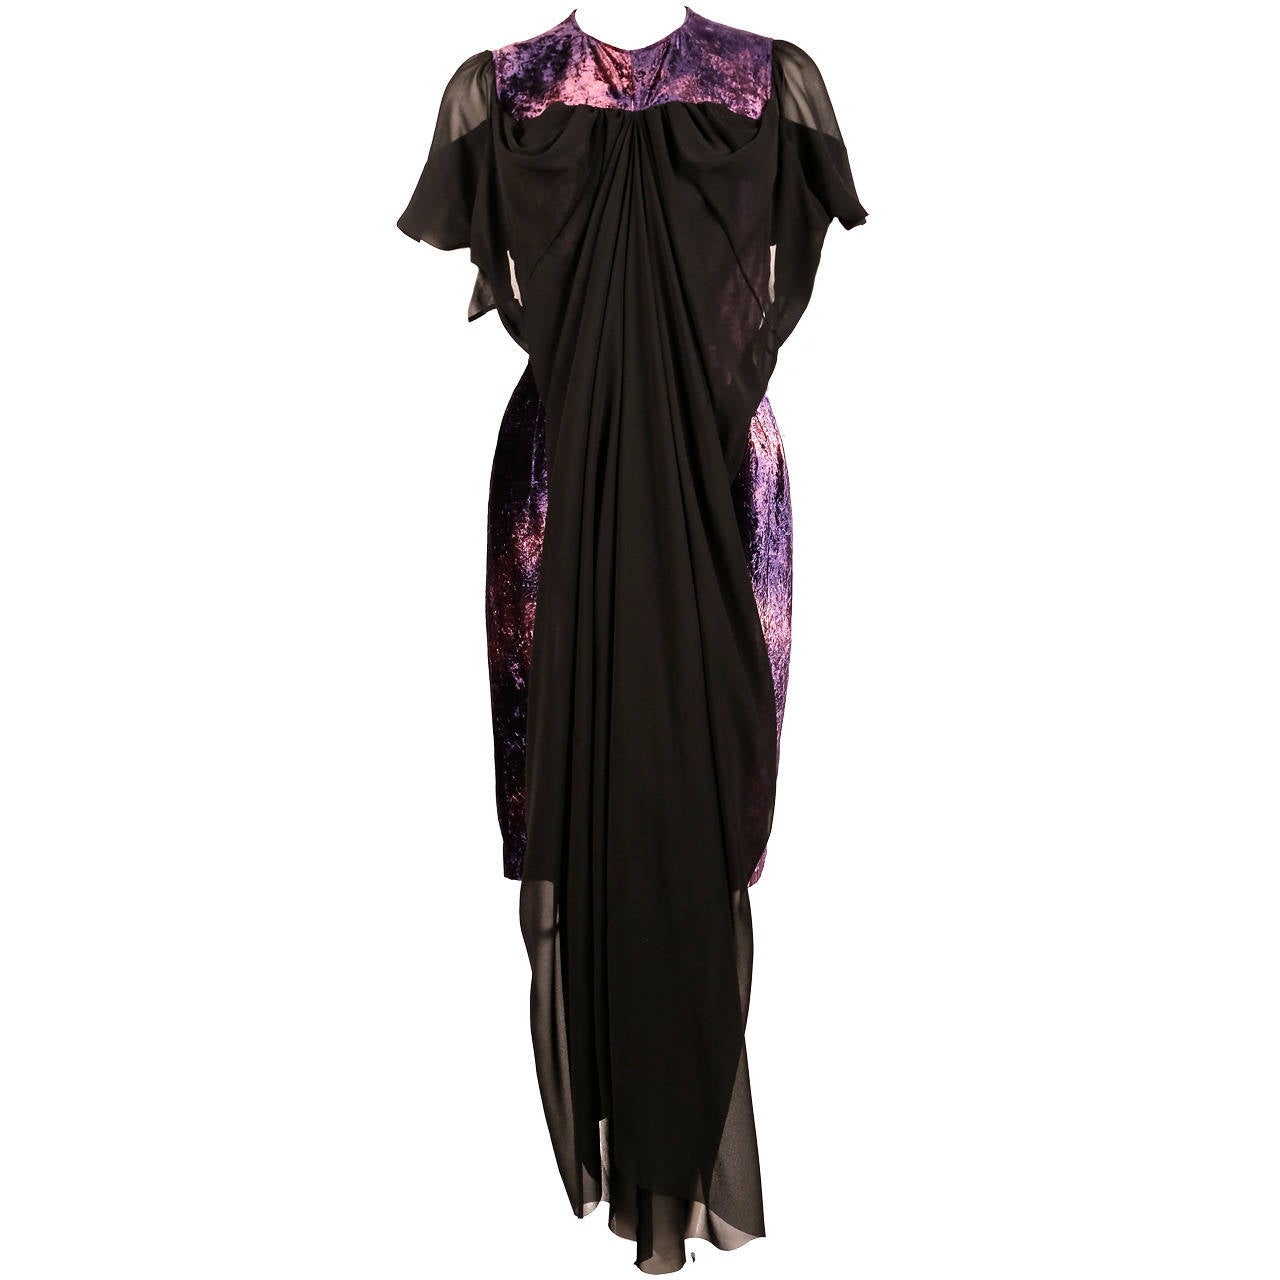 JUNYA WATANABE tie dyed velvet dress with sheer black overlay - unworn with tags